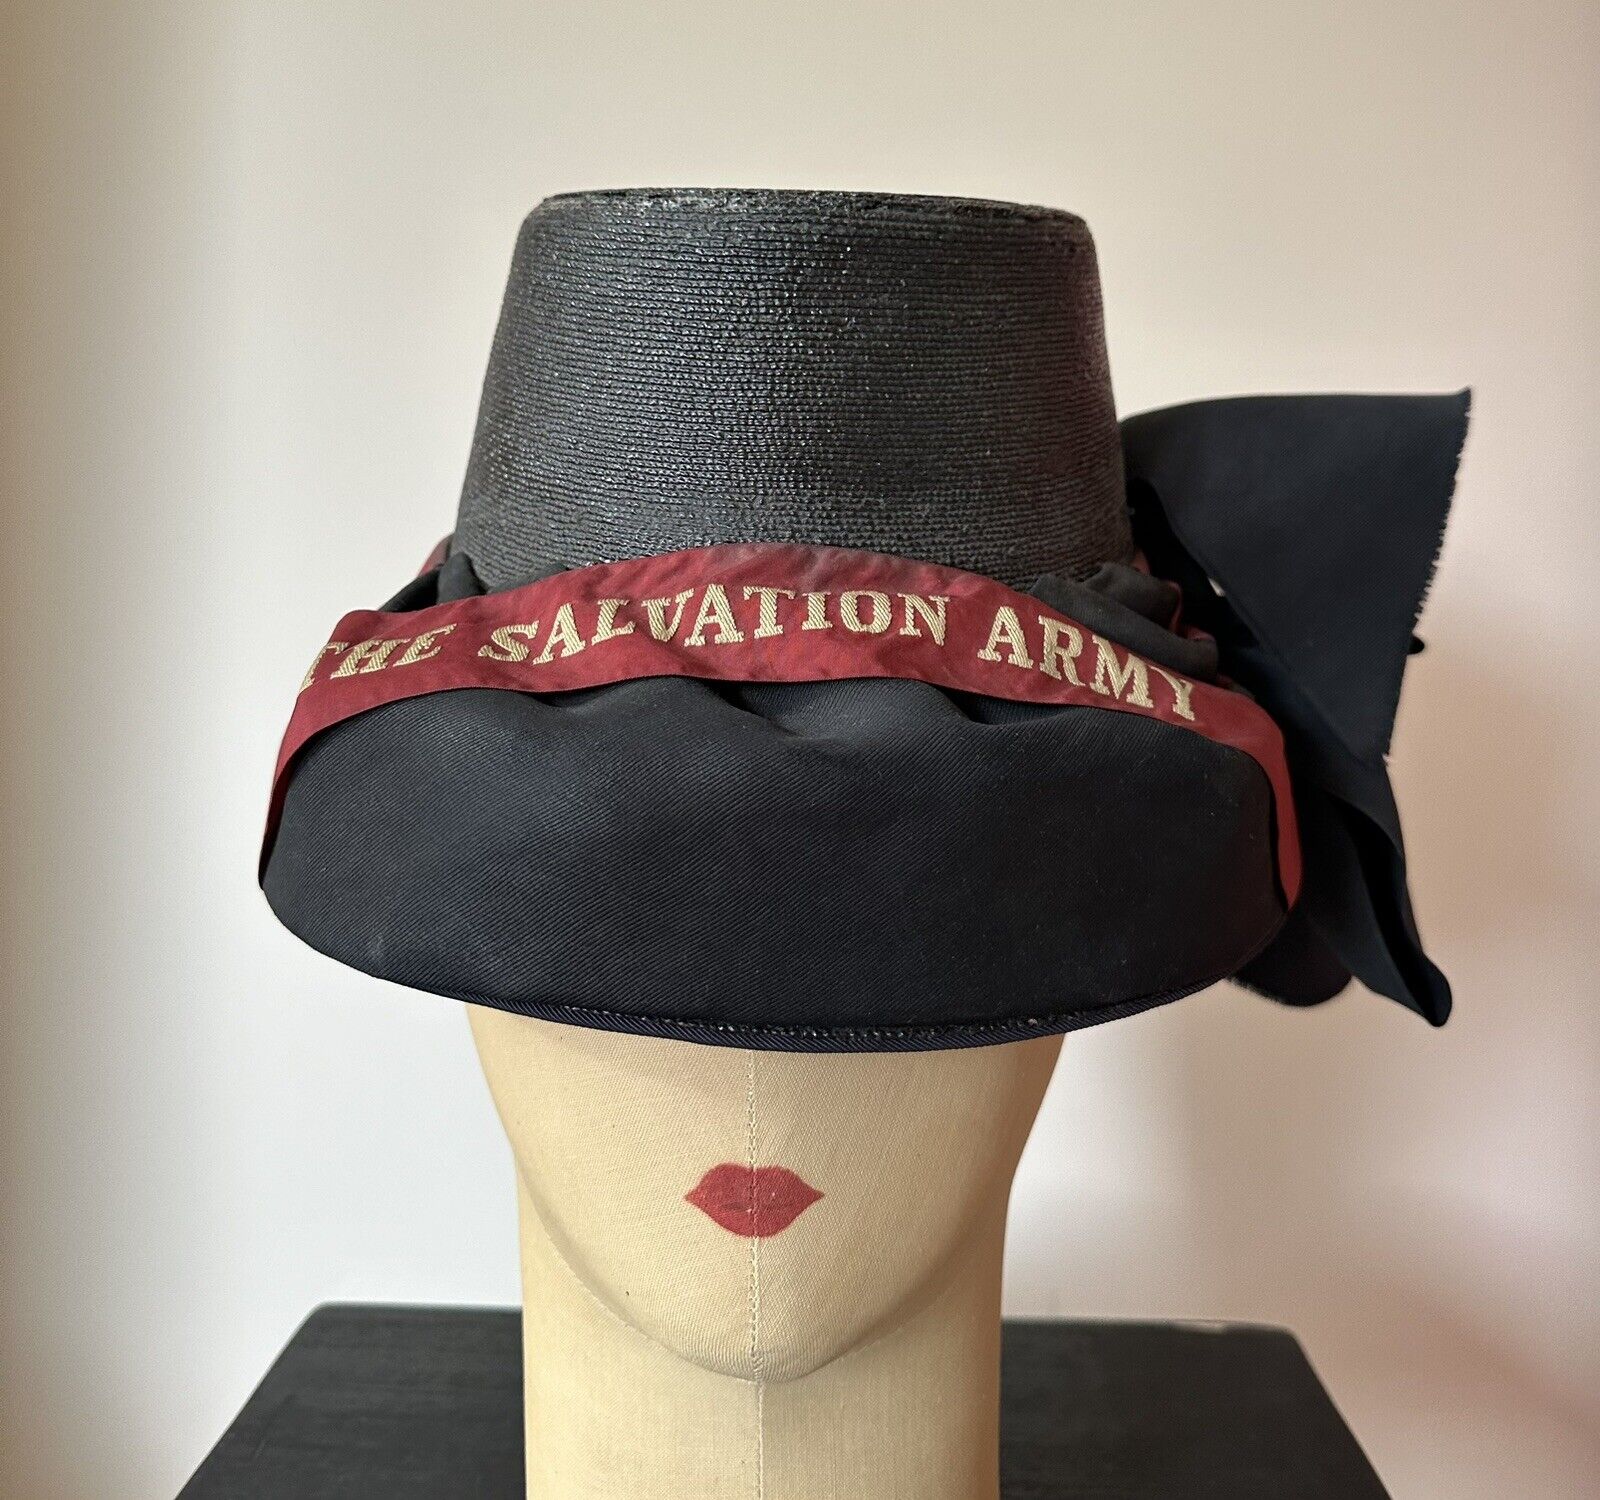 Vintage 1940s 50s Salvation Army black red ribbon uniform hat bonnet